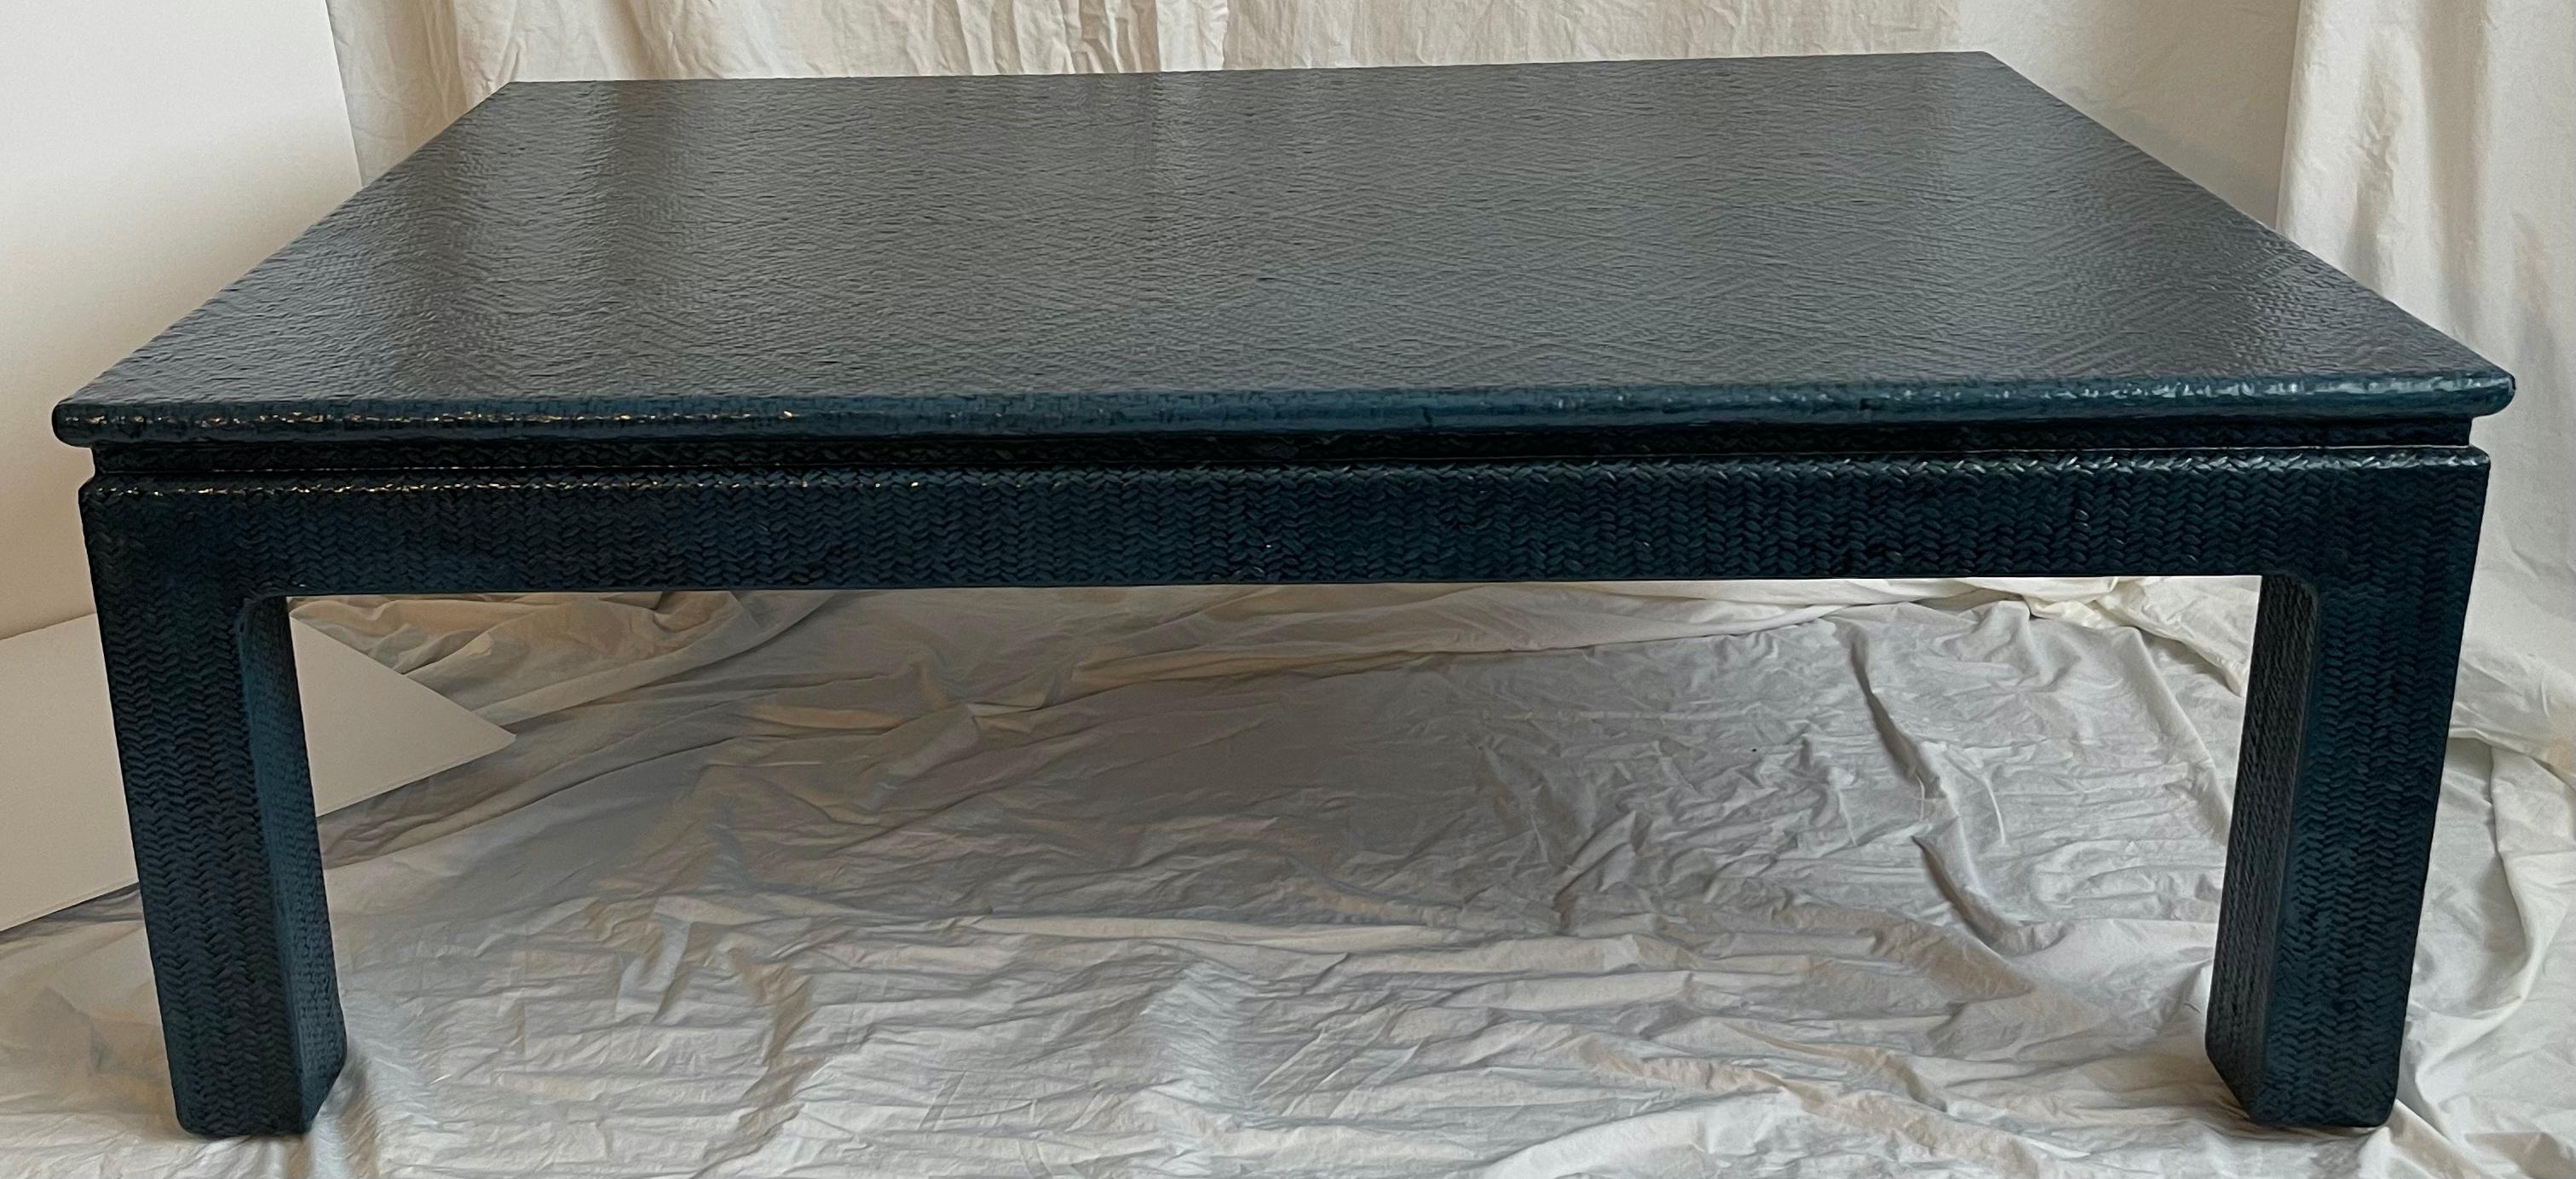 Grande table de cocktail des années 1970 en toile de gazon peinte en bleu foncé.
Table de cocktail de style Chinoiserie enveloppée d'une toile de gazon à motifs de losanges. Nouvellement repeint dans un bleu moyen personnalisé avec une finition